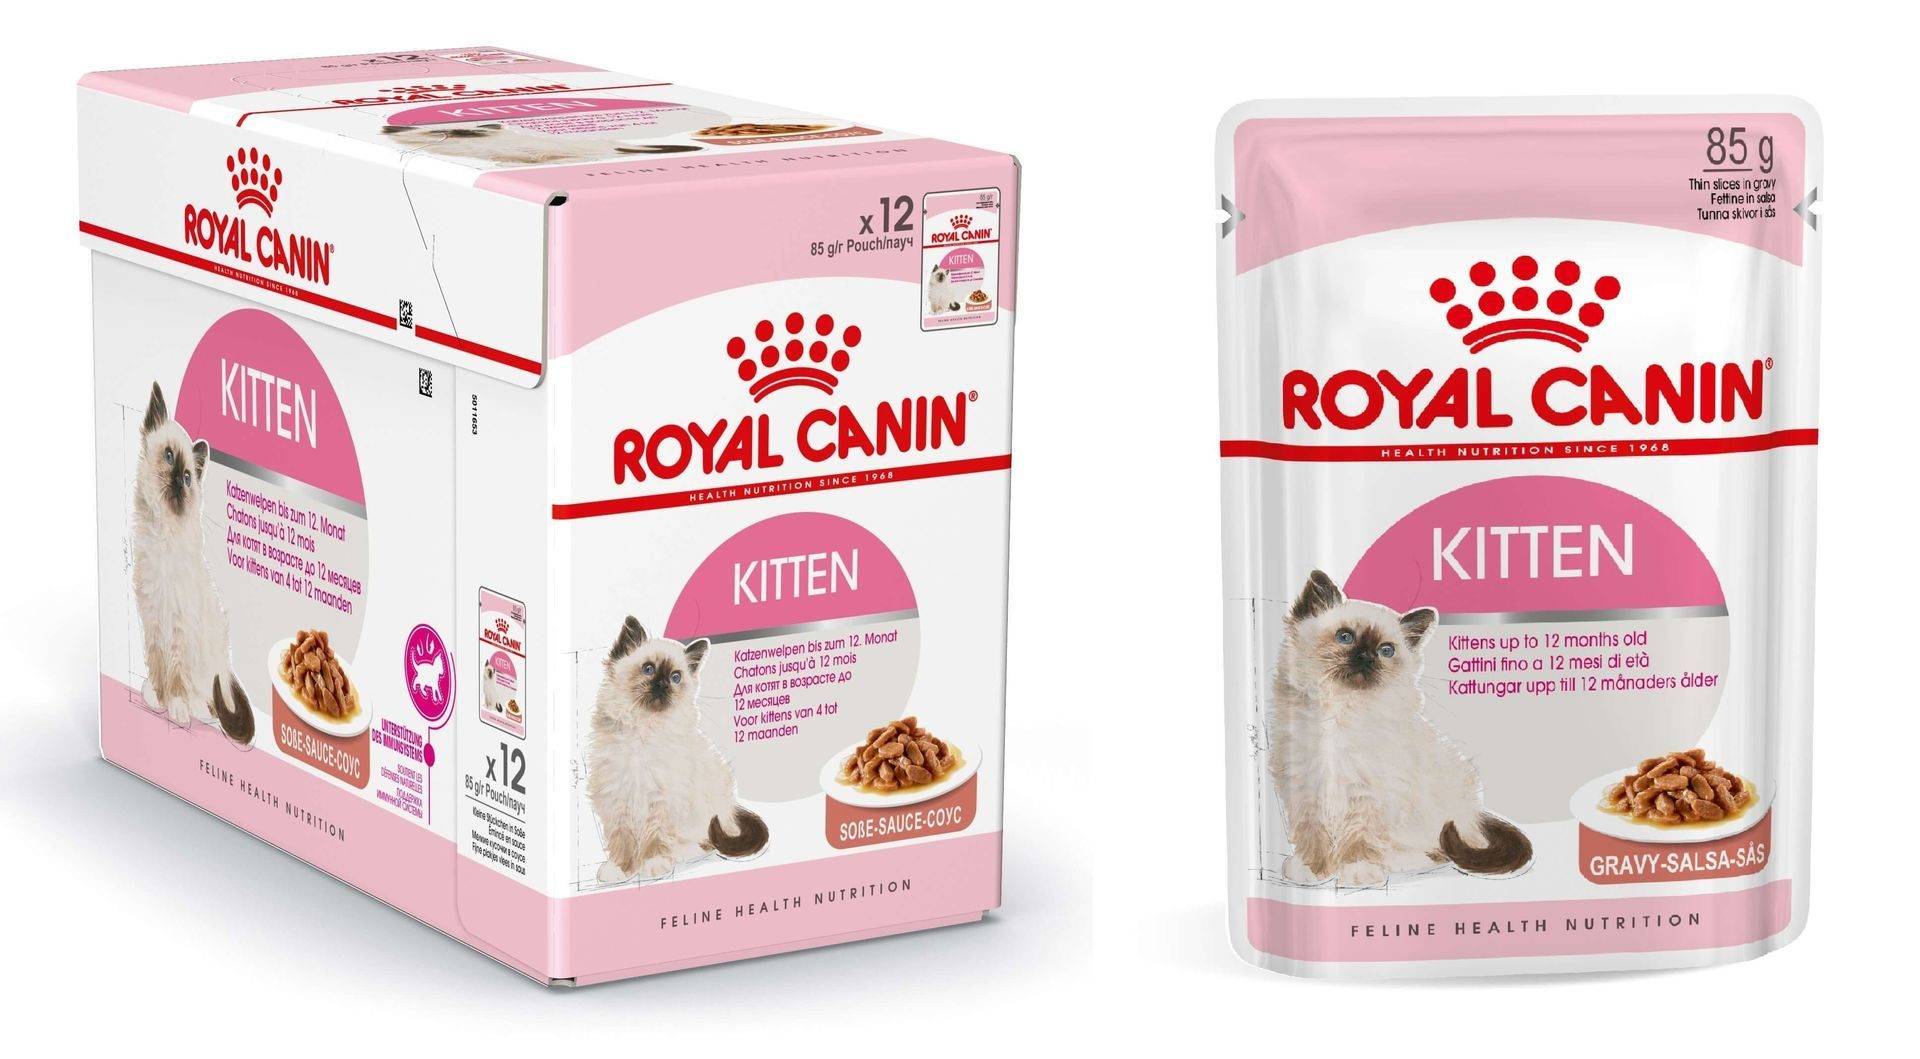 Royal canin для кошек влажный купить. Роял Канин для котят Киттен. Корм Роял Канин для кошек до 12 месяцев. Роял Канин для котят в соусе. Роял Канин пауч для котят в соусе.